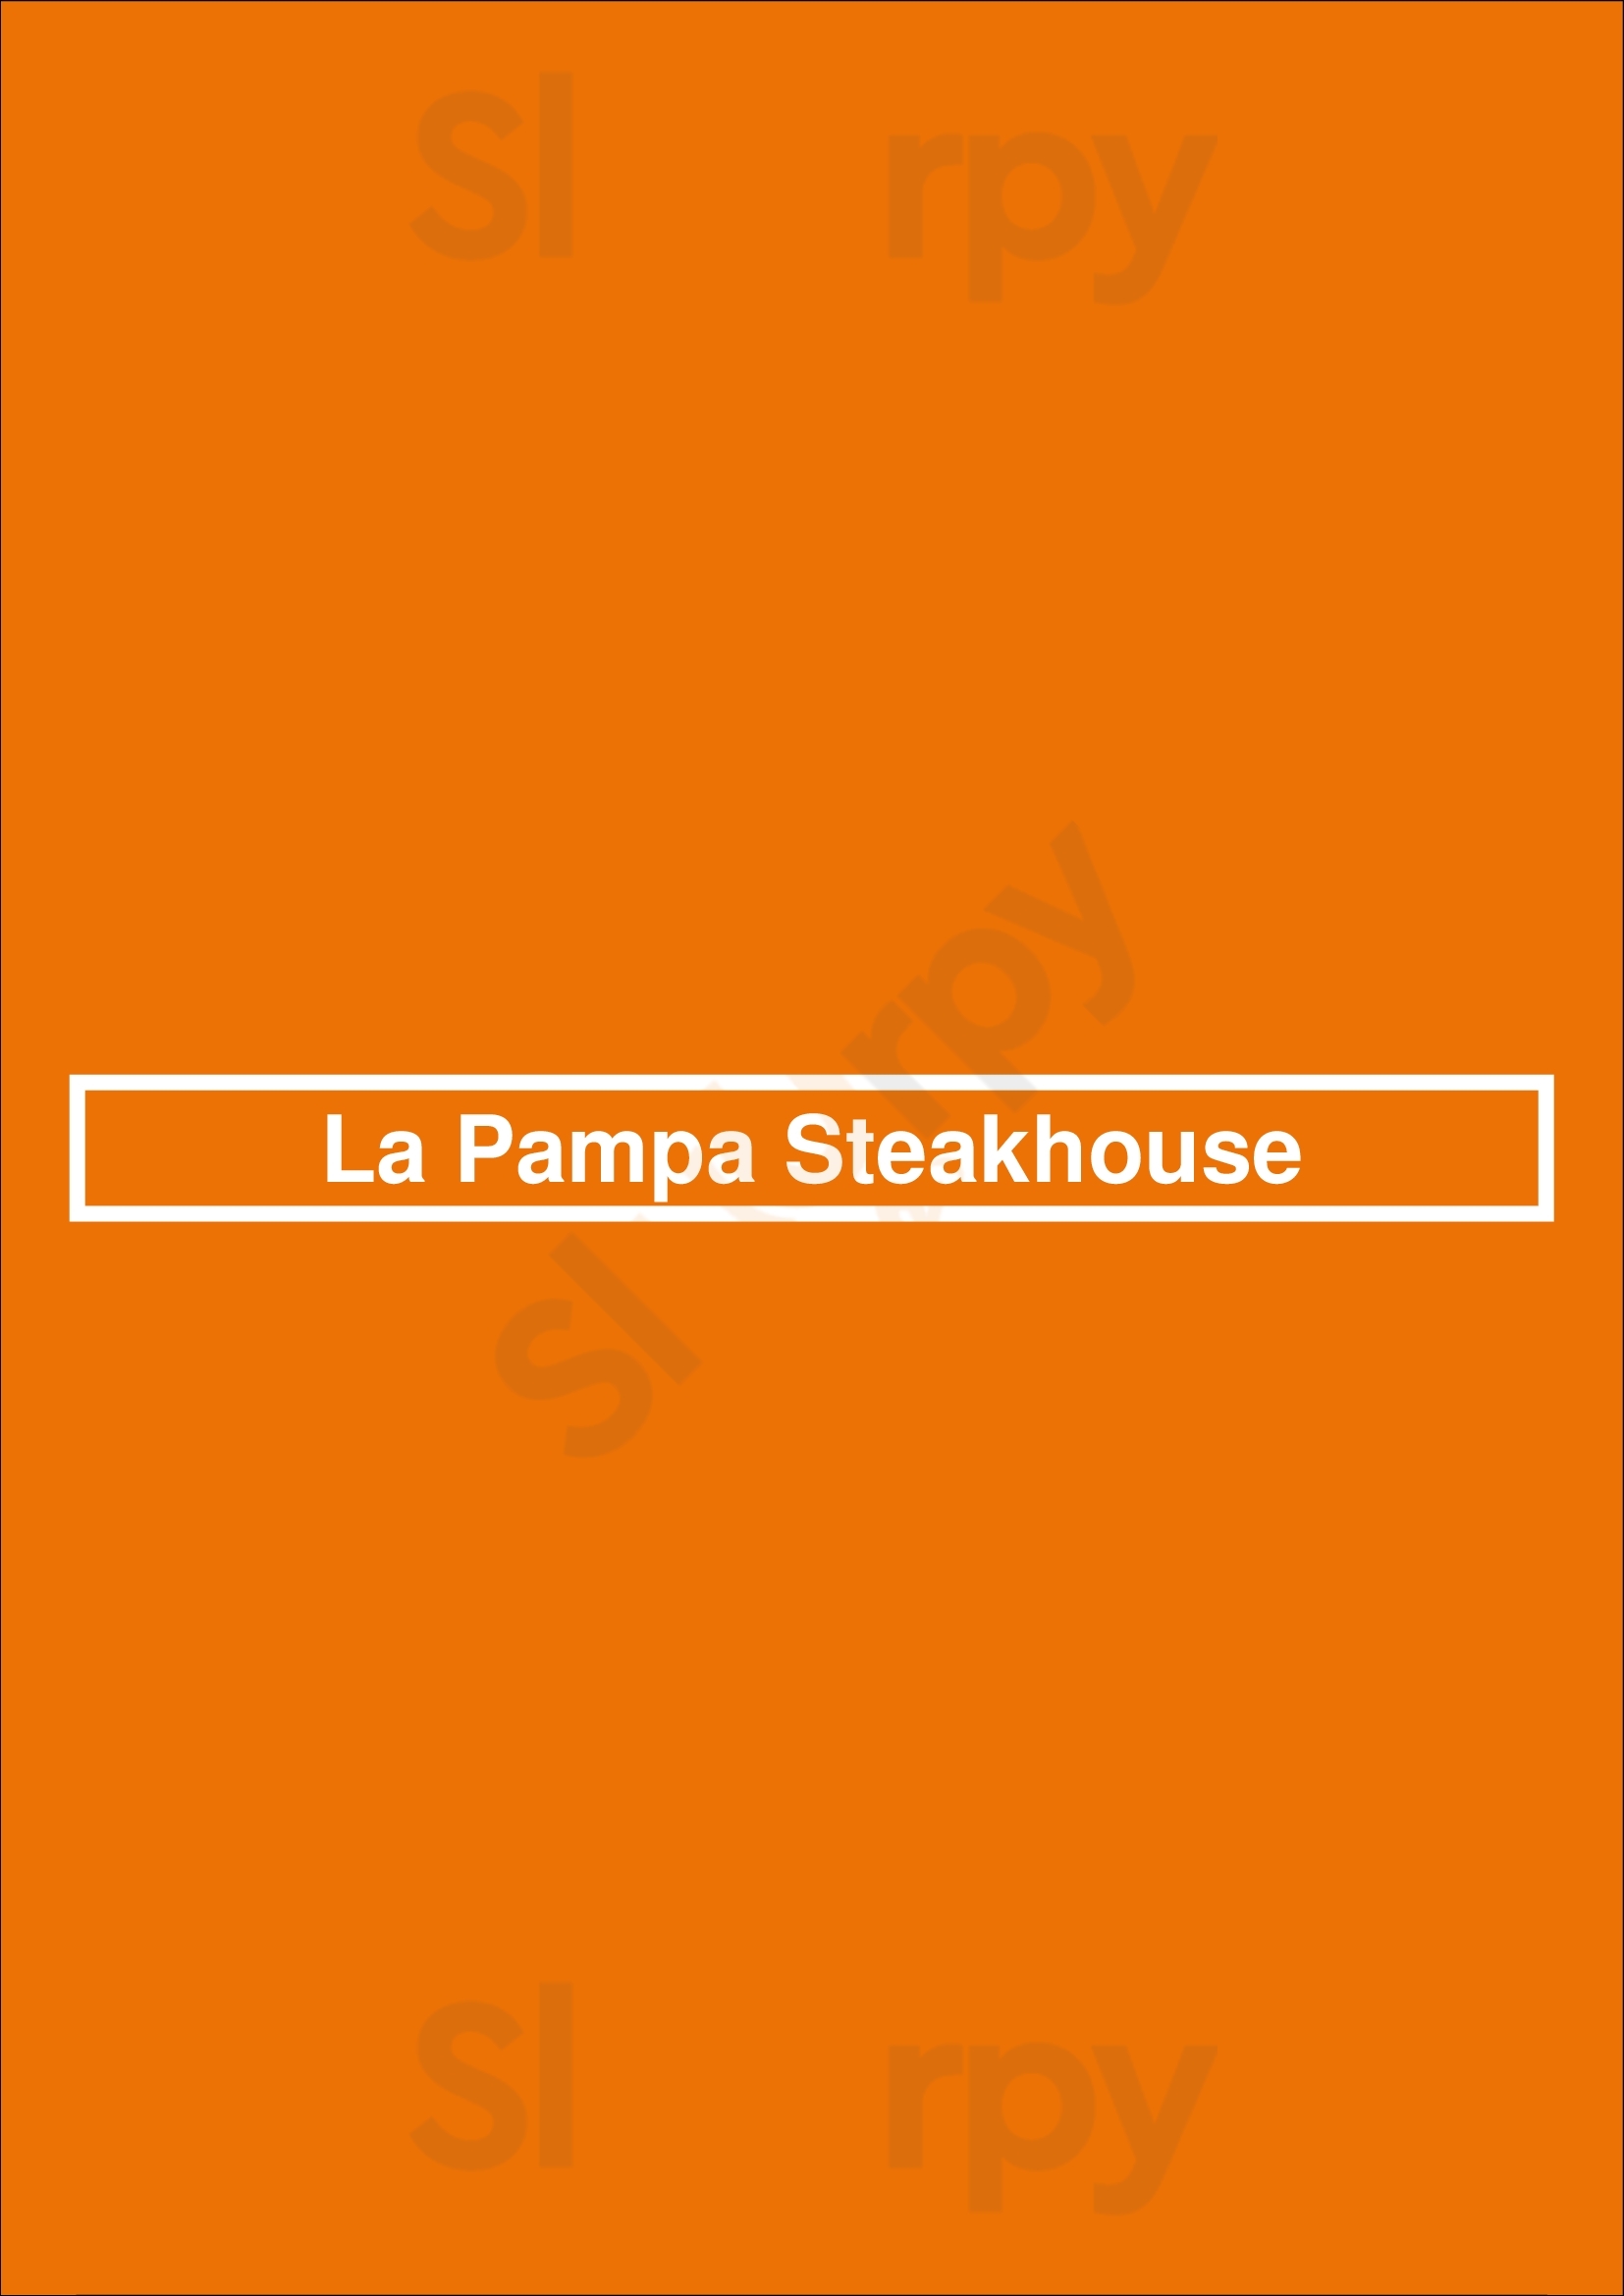 La Pampa Steakhouse Budapest Menu - 1